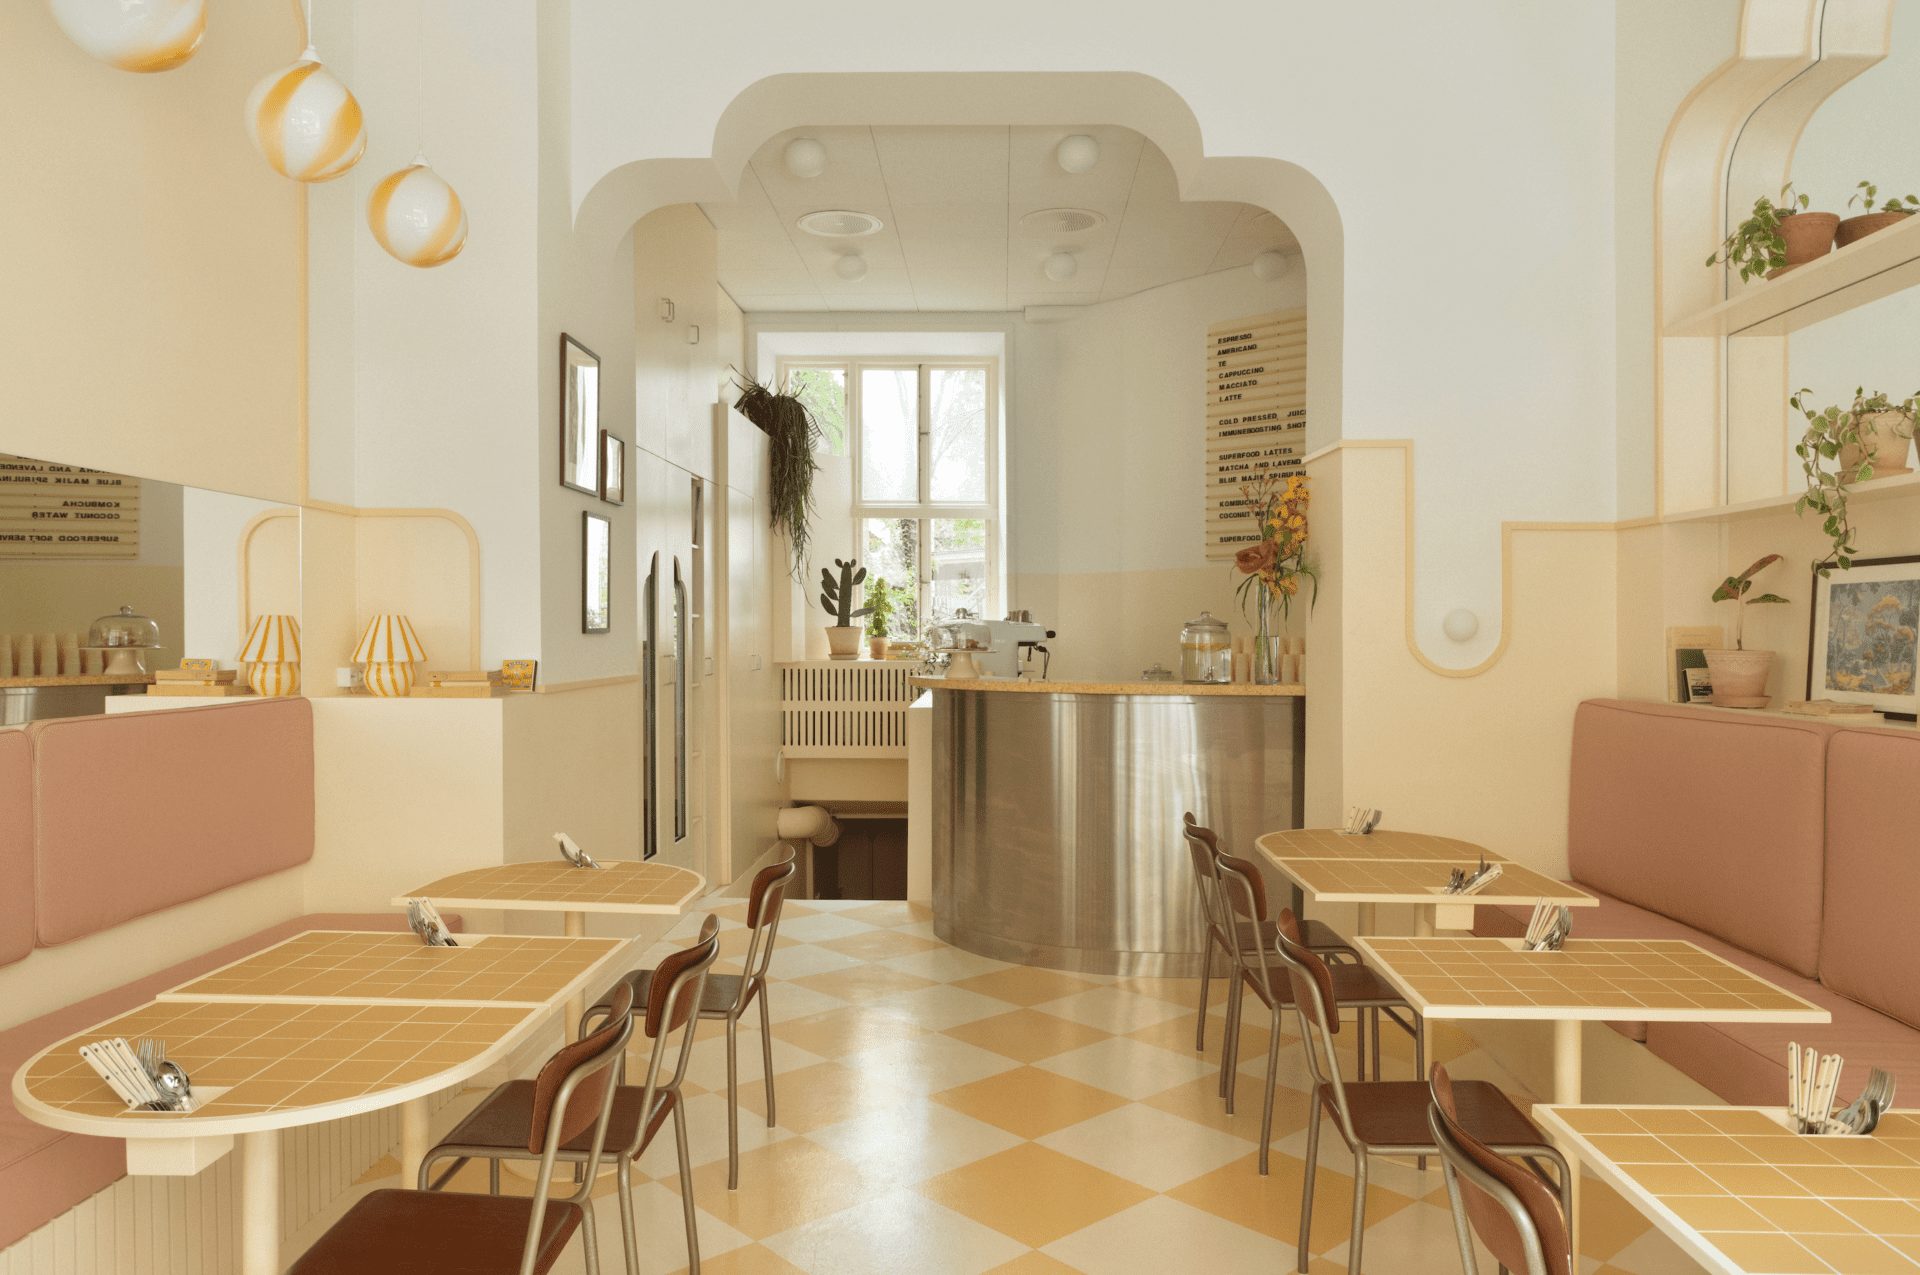 ASKA creates cinematic experience in Stockholm café Banacado